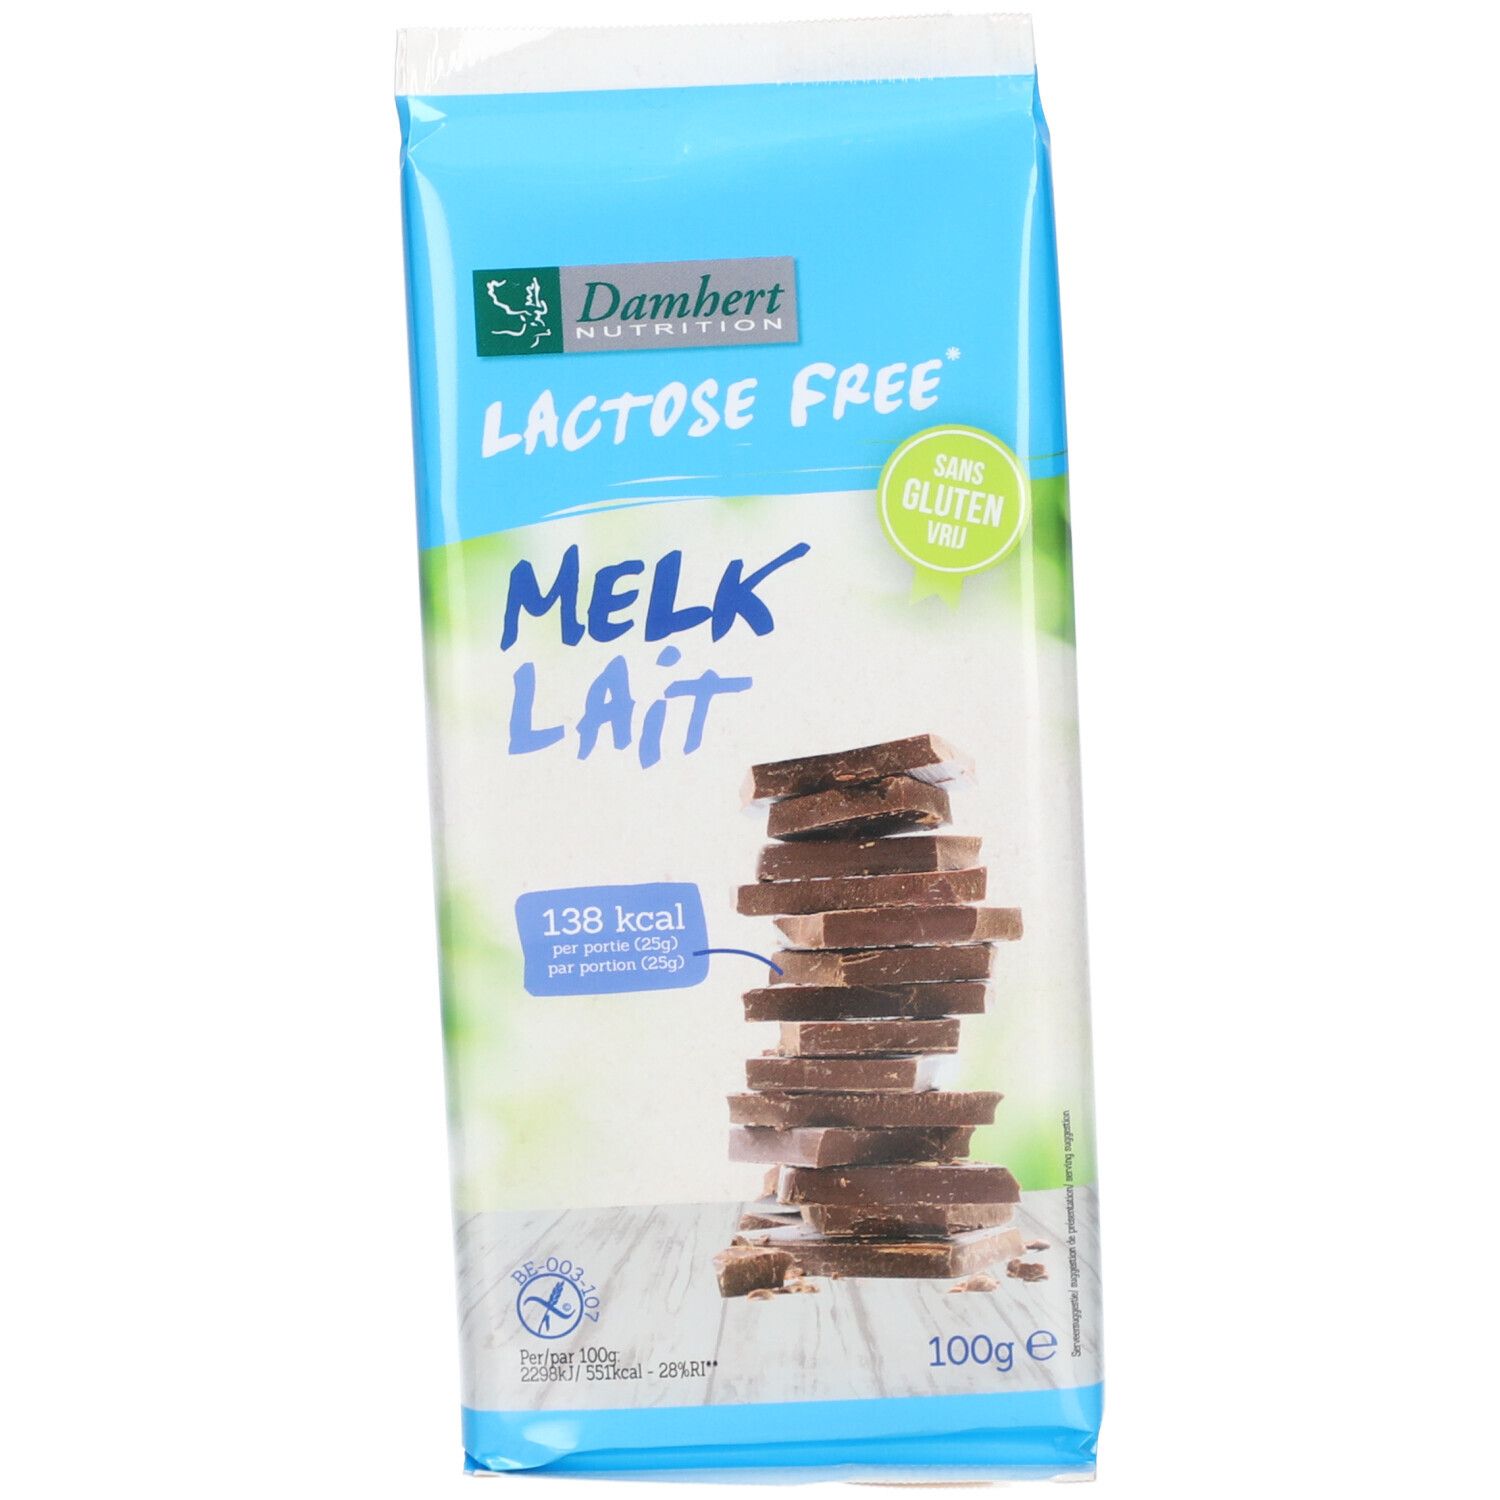 Damhert Lactose Free Tablette de chocolat au lait sans gluten